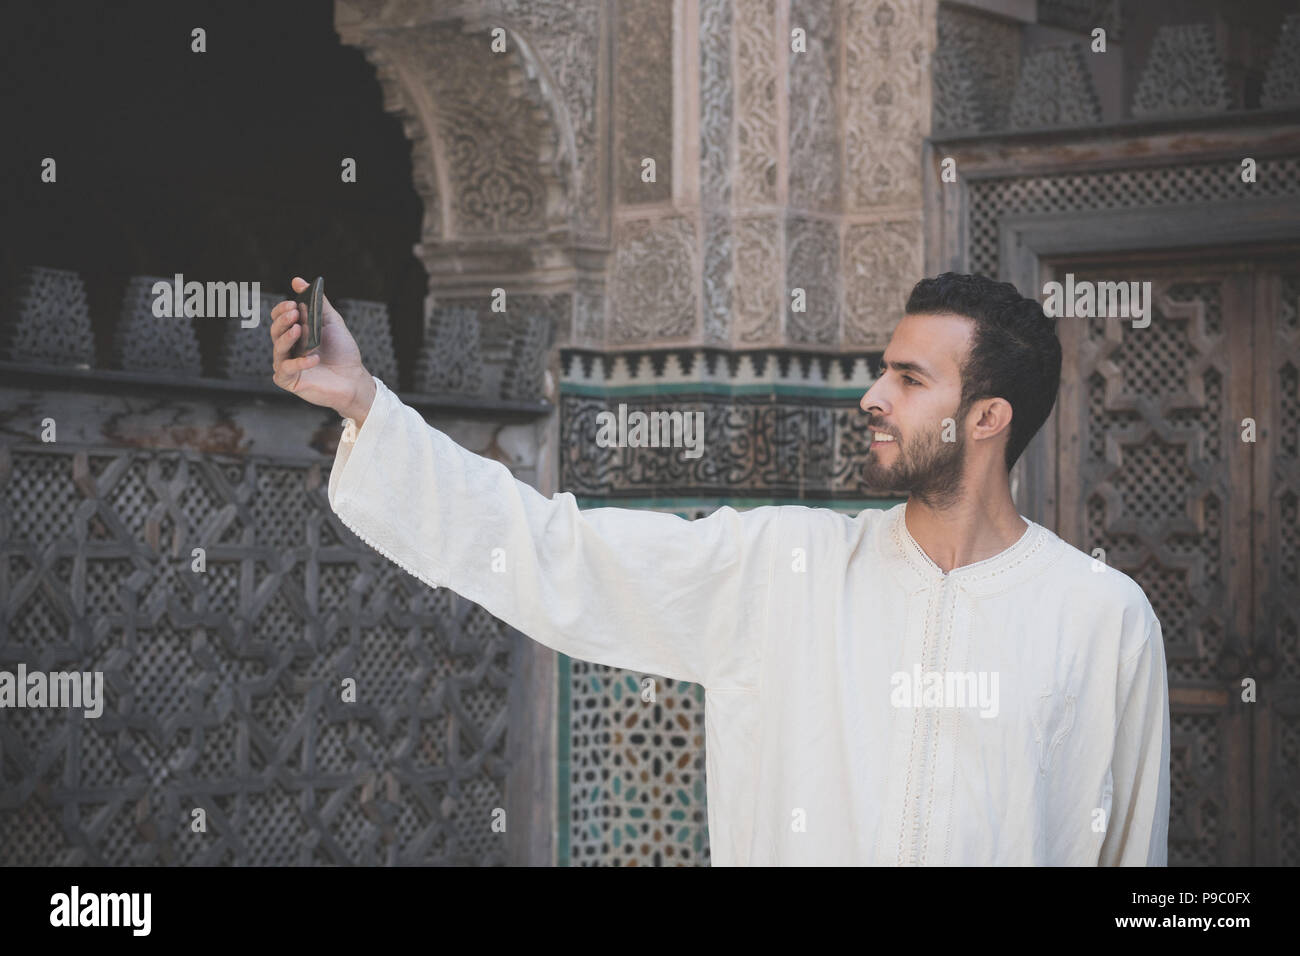 Jahrgang suche Bild von jungen muslimischen Mann in traditioneller Kleidung lächelnd und unter selfie mit Handy Stockfoto